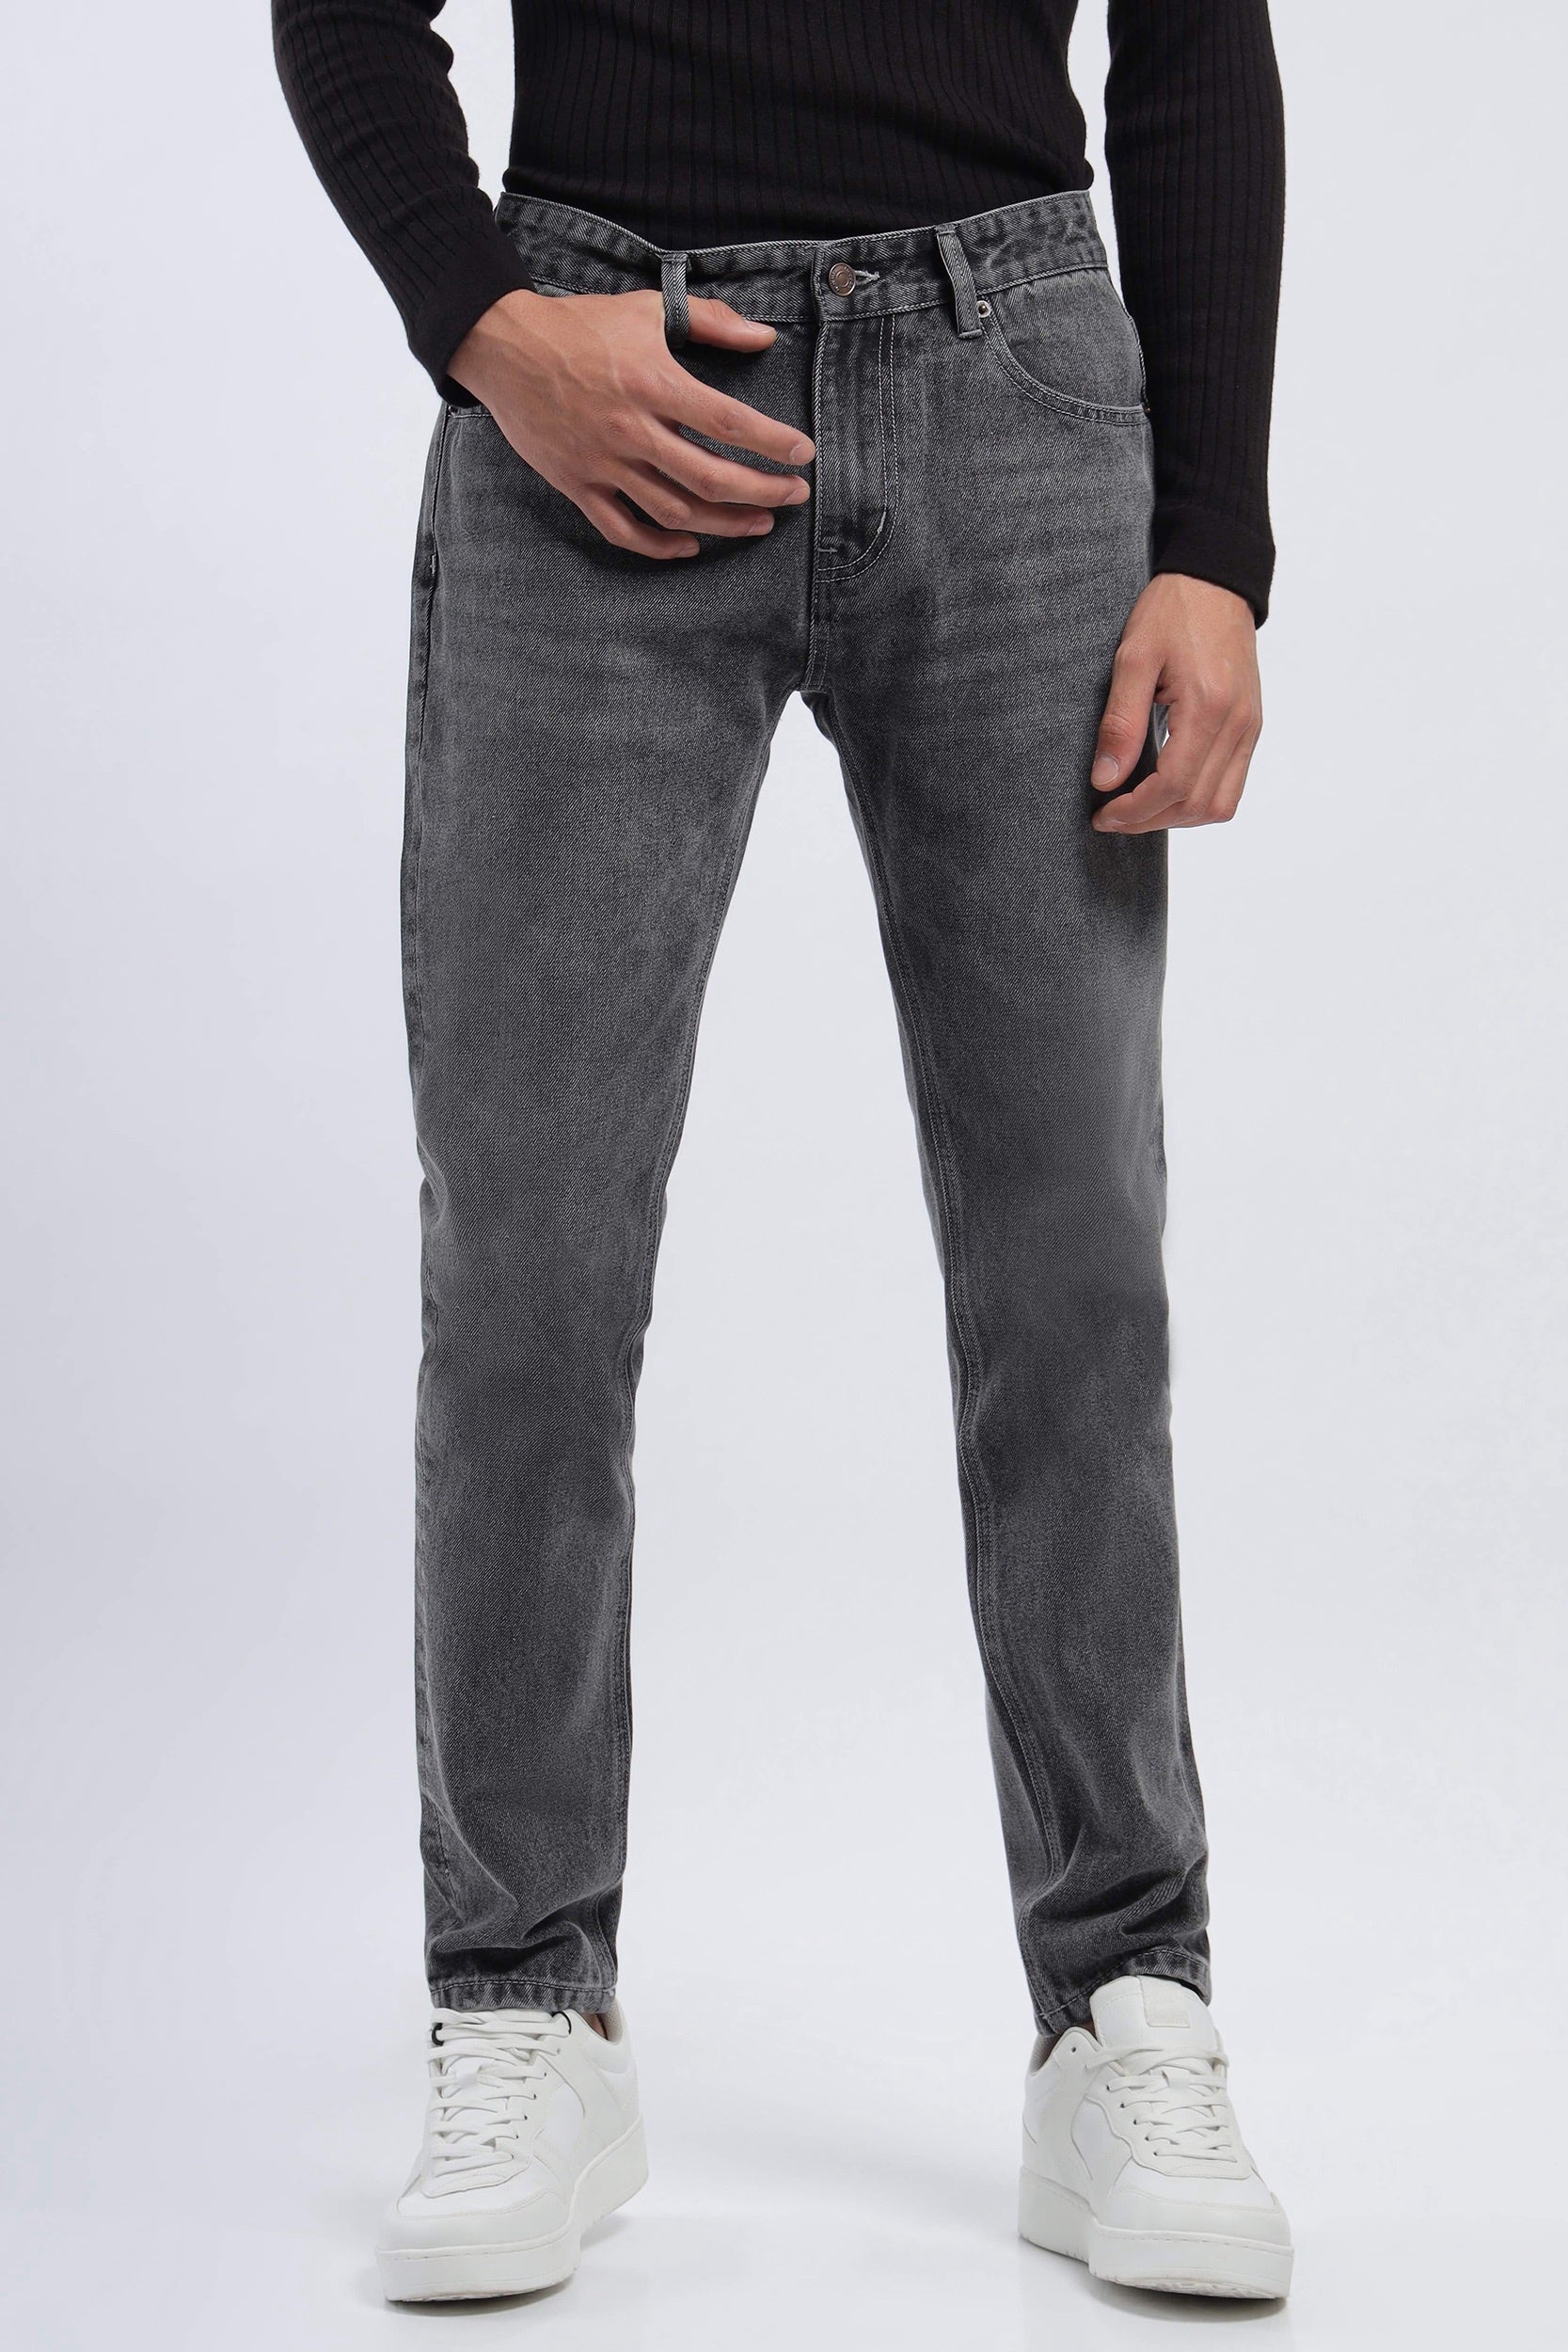 GD004 Mid Grey Slim Fit Men Jeans – Noggah Denims